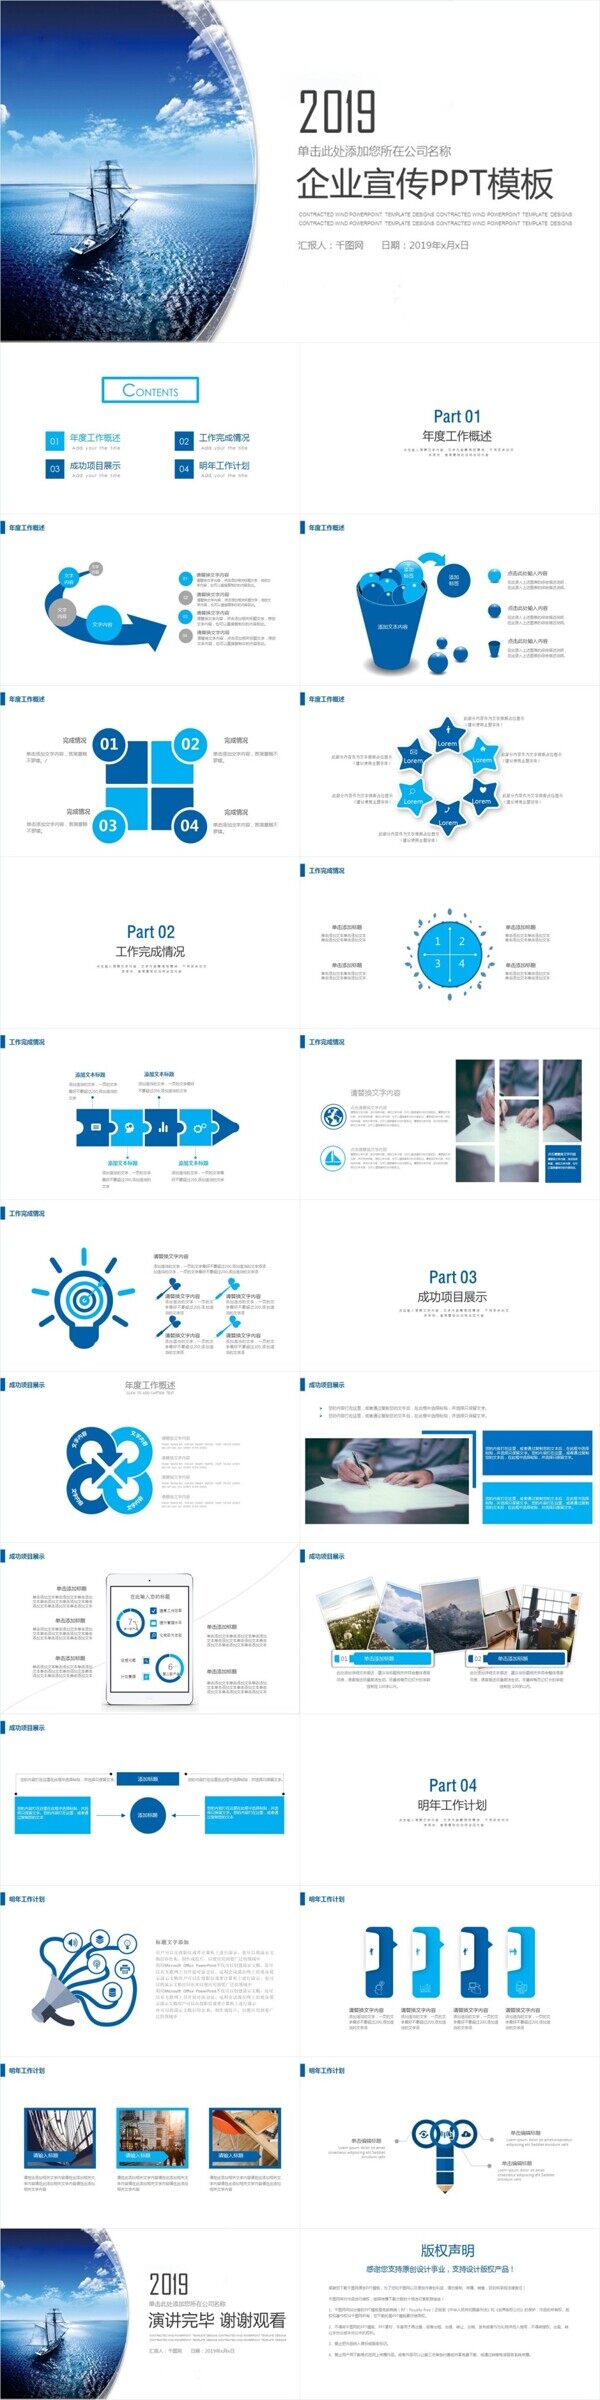 蓝色简约企业宣传介绍商业计划书PPT模板